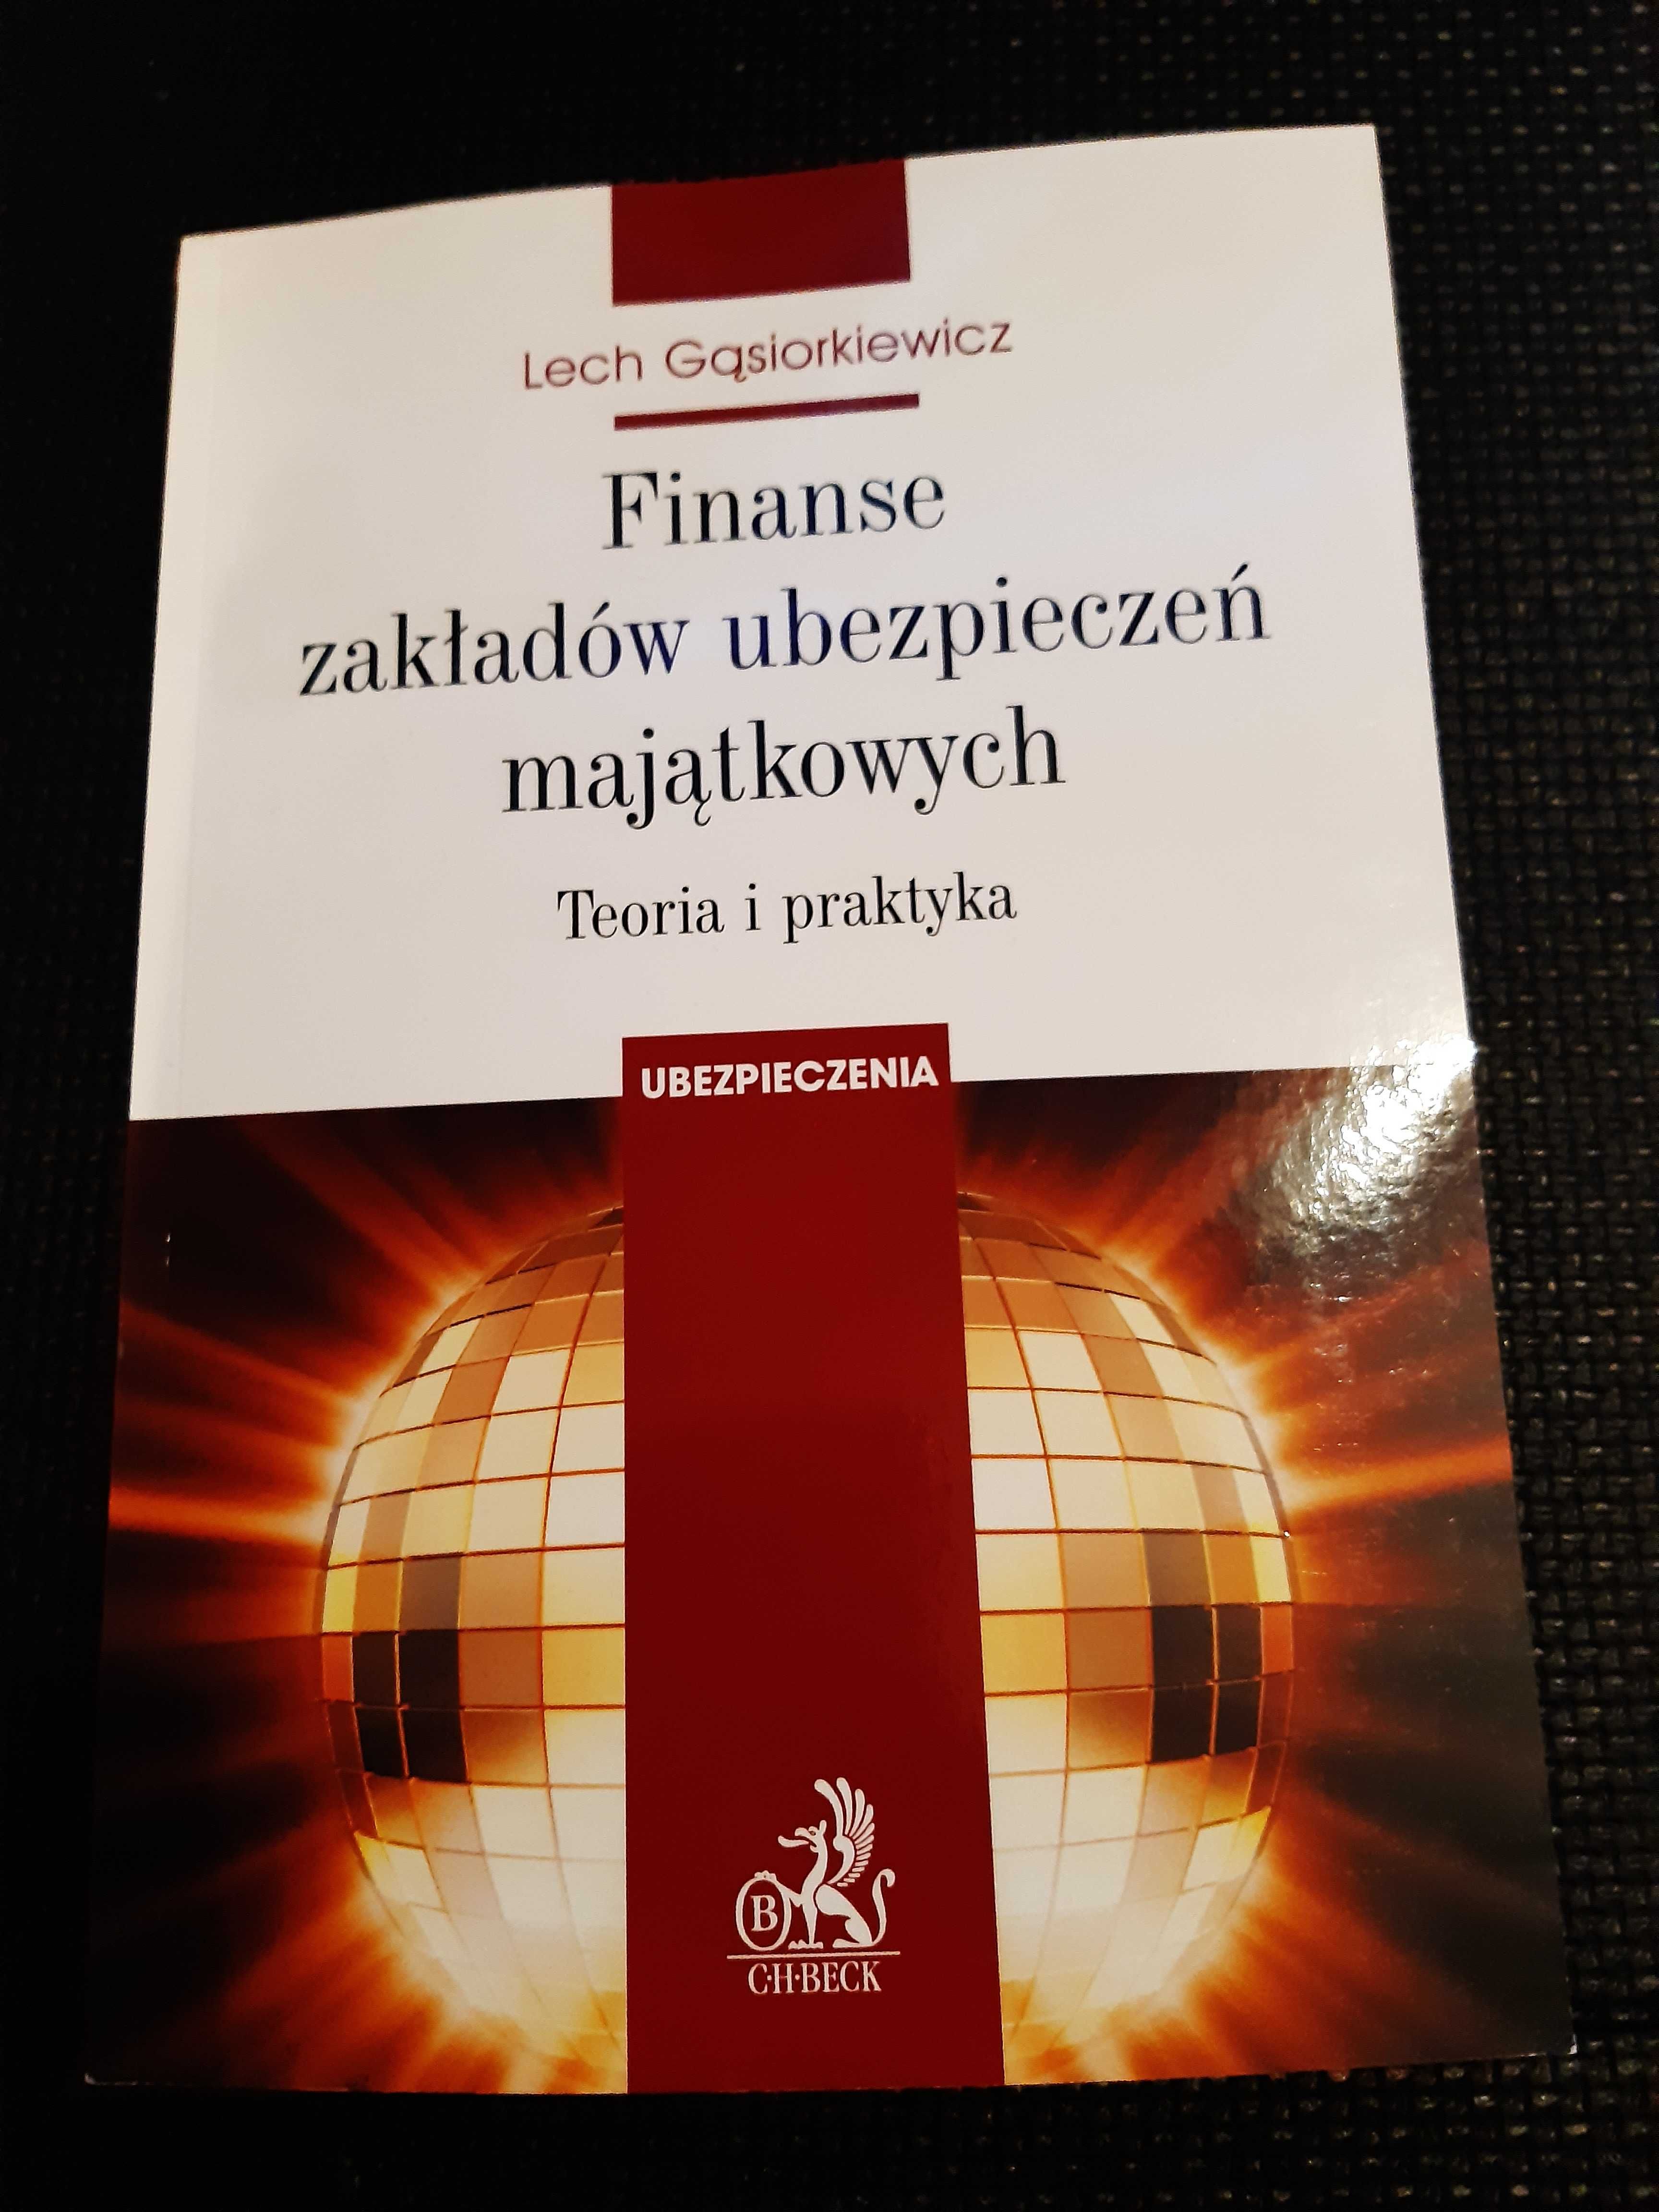 Finanse zakładów ubezpieczeń majątkowych - Lech Gąsiorkiewicz